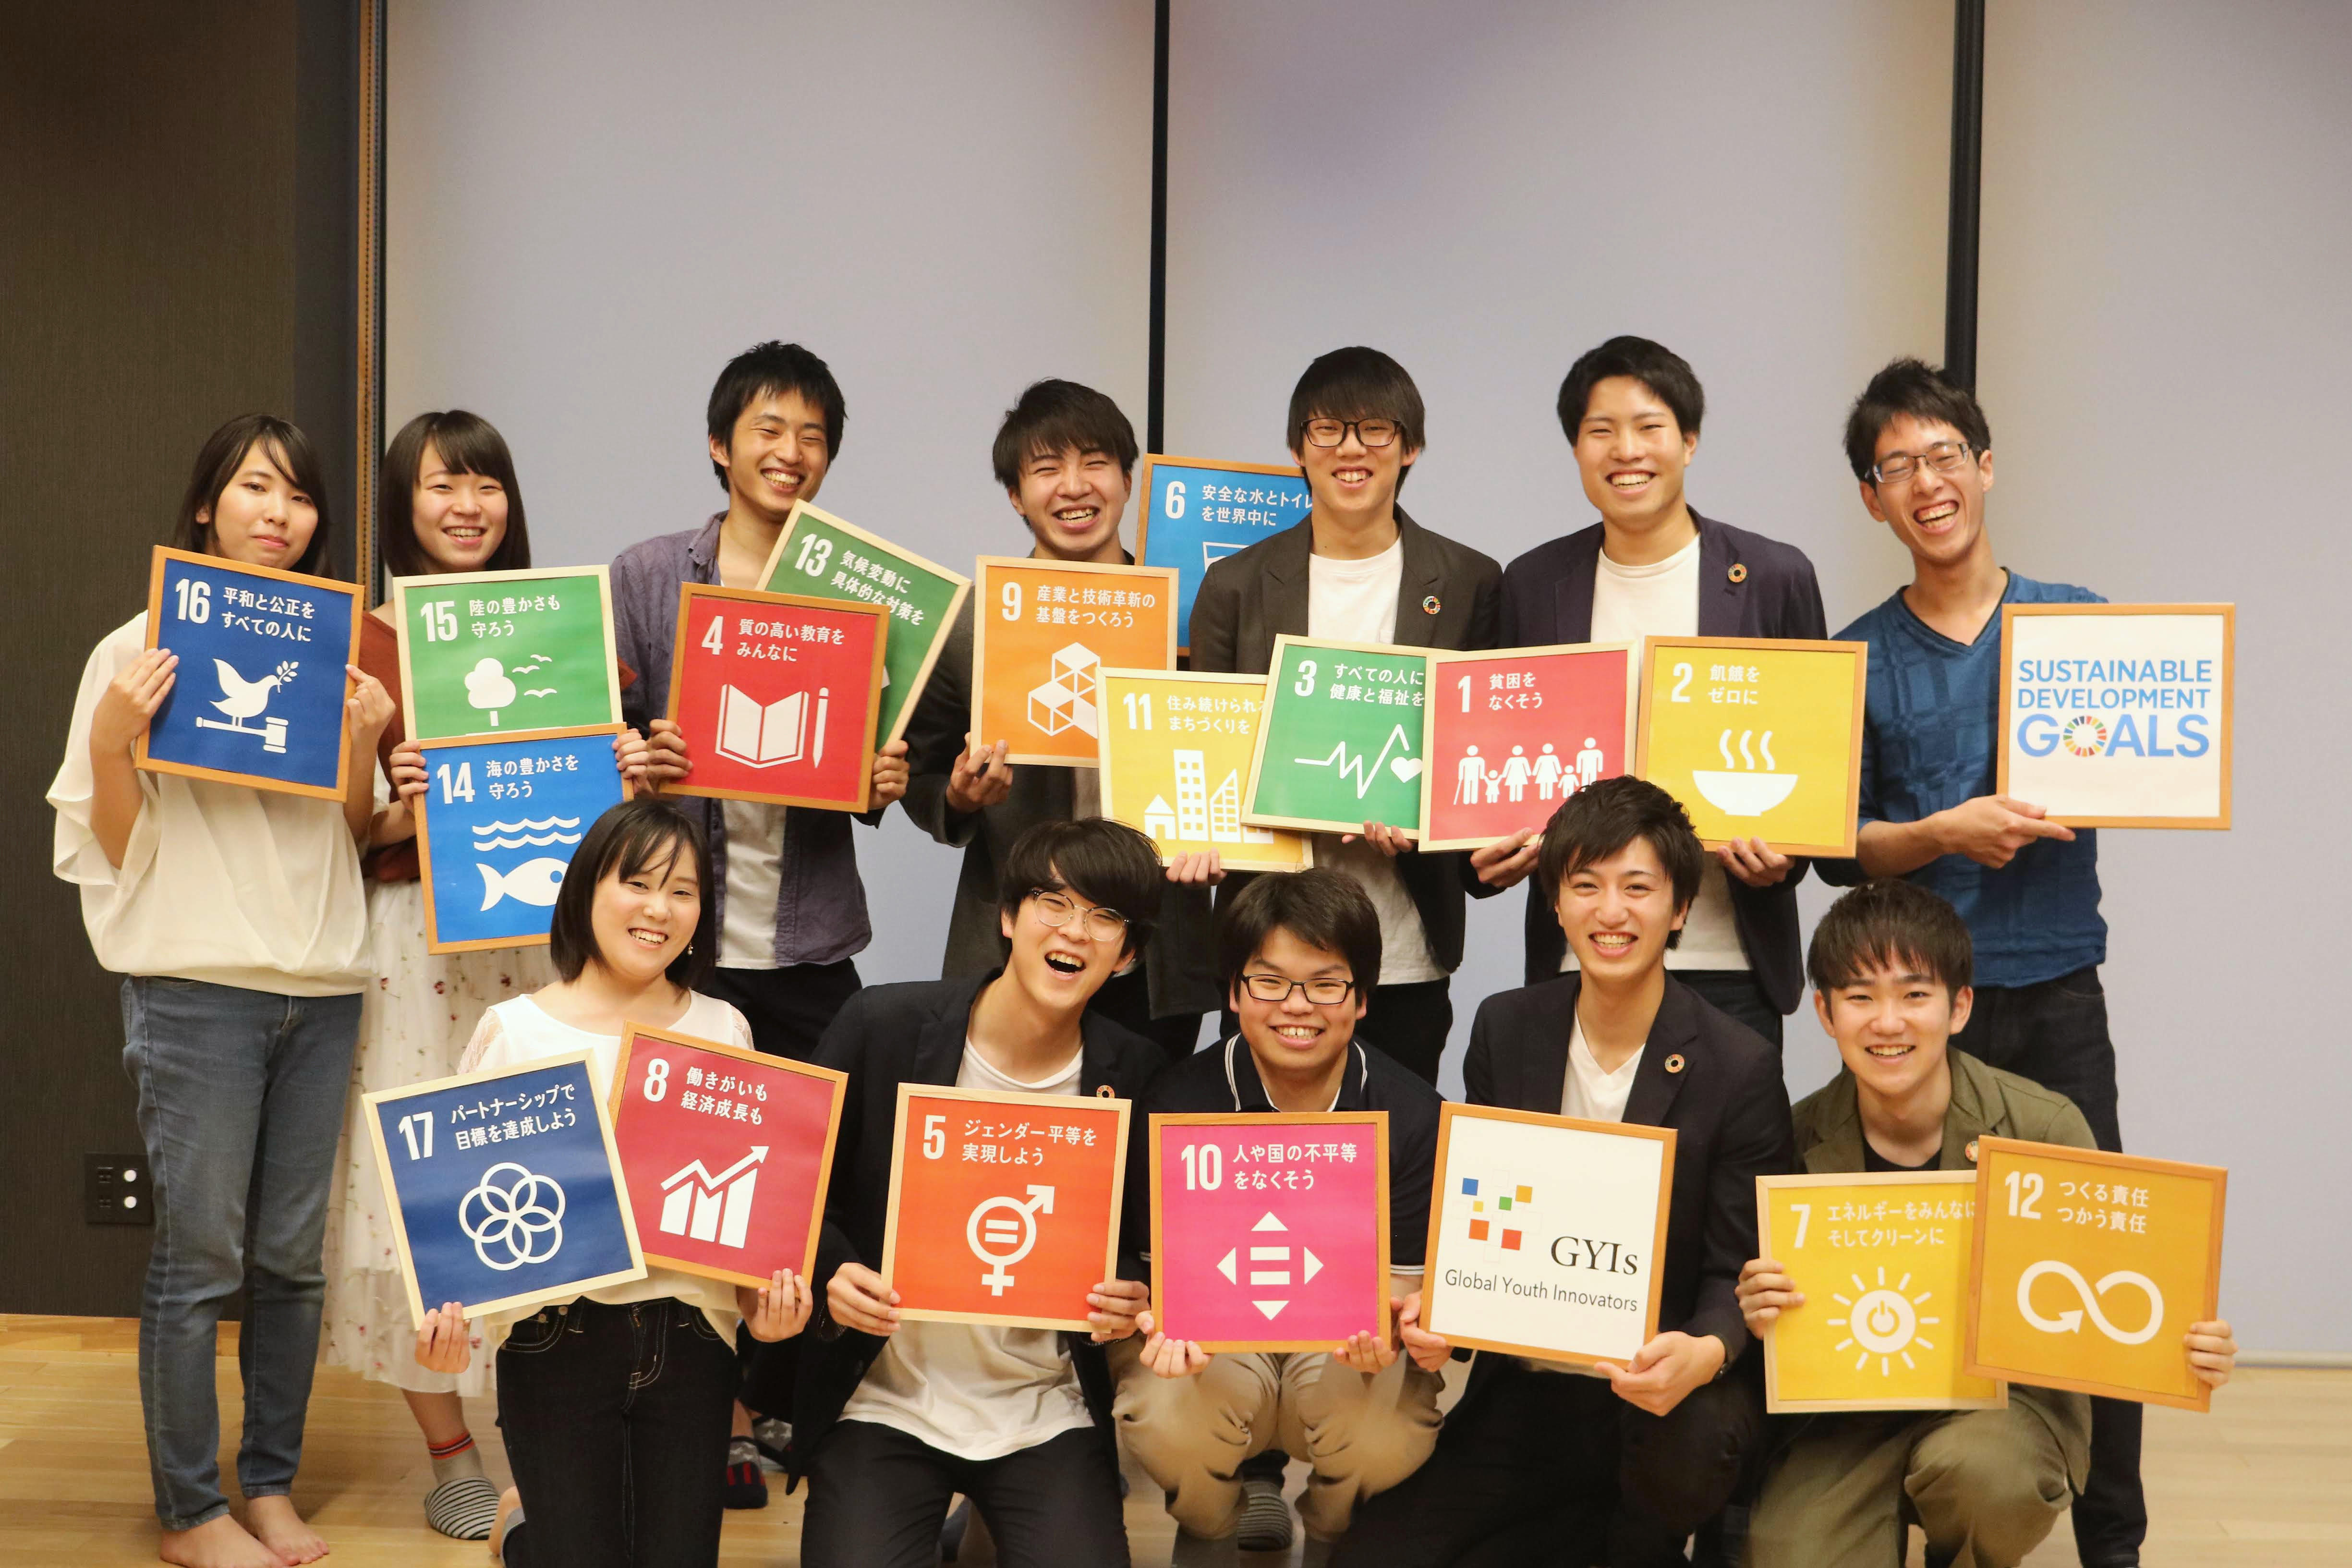 金沢工業大学の学生プロジェクト「SDGs Global Youth Innovators（GYIs）」が新入生向けのオンライン相談窓口を開設。「学びをとめない」在学生による新入生のサポート。